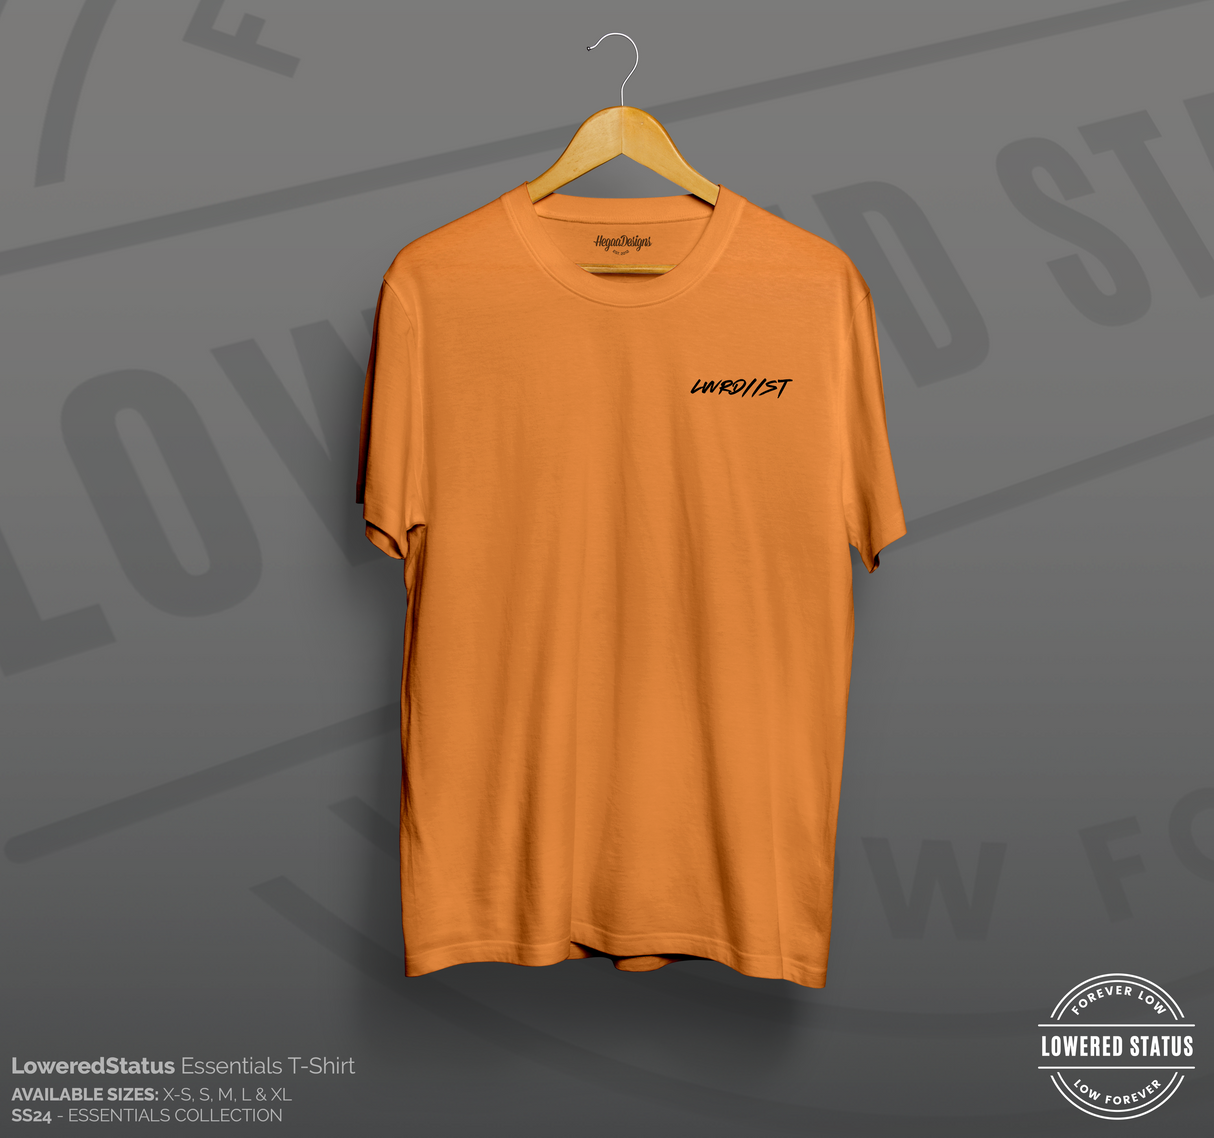 LWRD//ST Graffiti Miami Orange T-Shirt